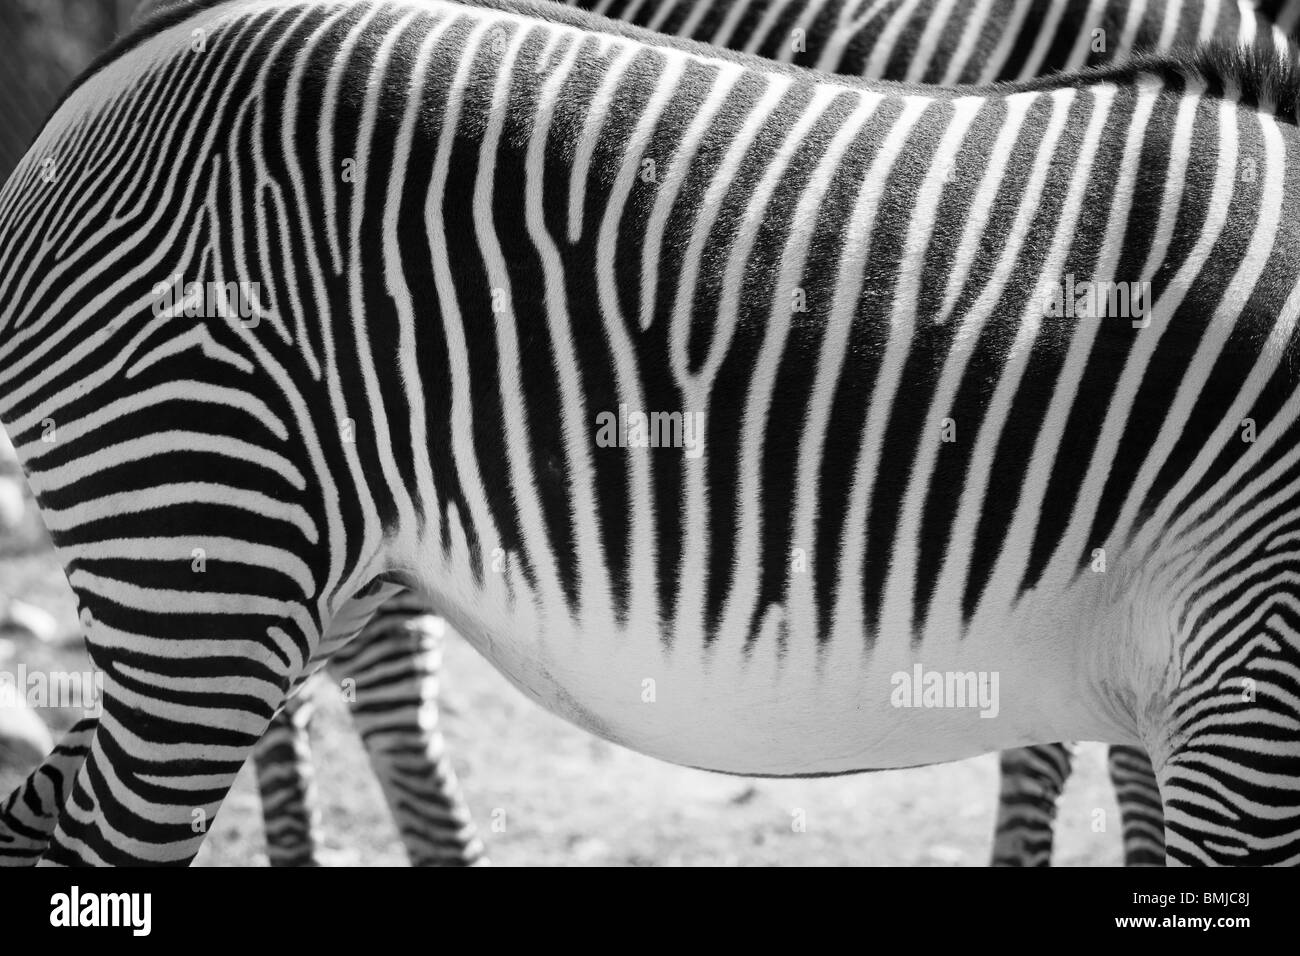 Zebra, equus quagga, in zoo setting. Stock Photo